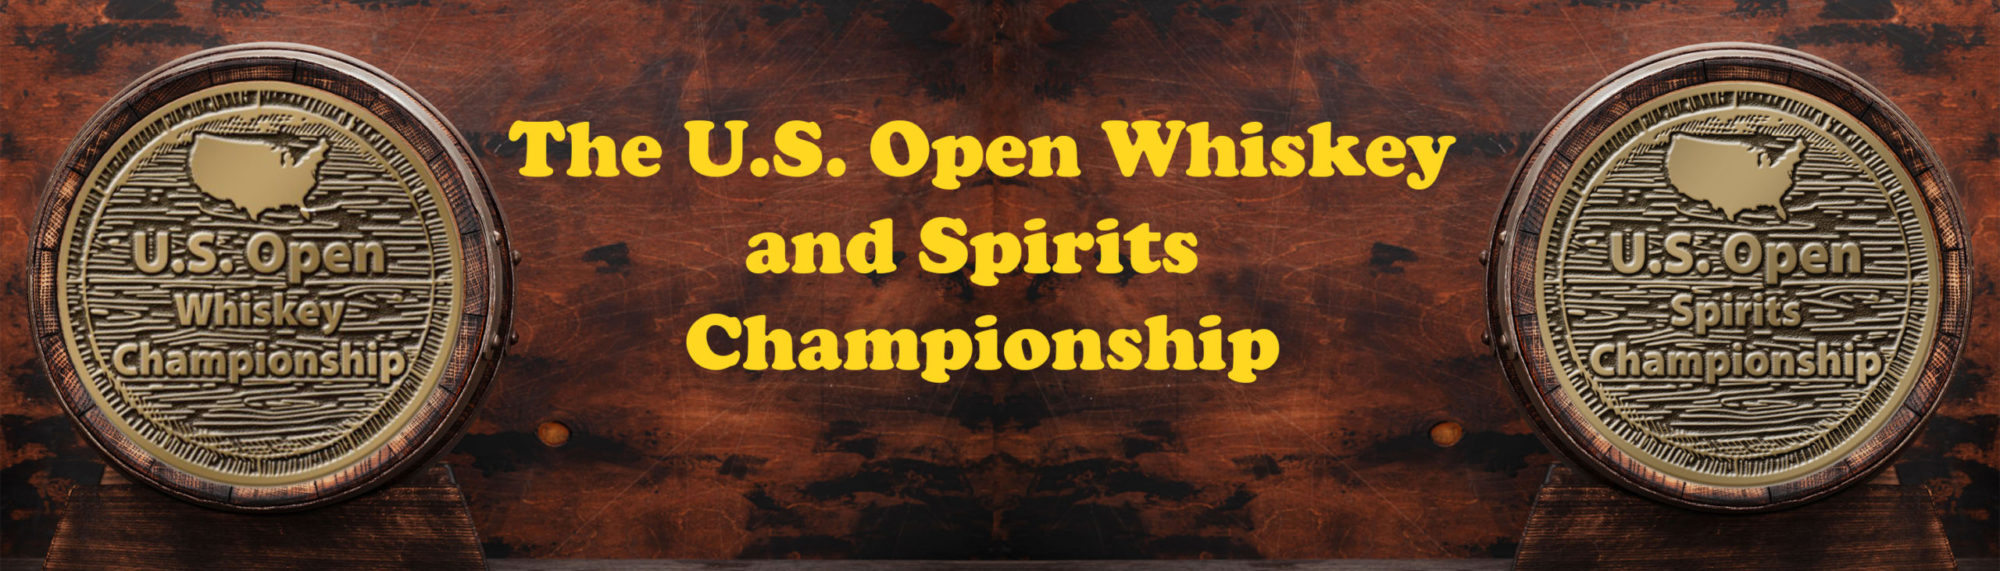 U.S. Open Whiskey & Spirits Championship